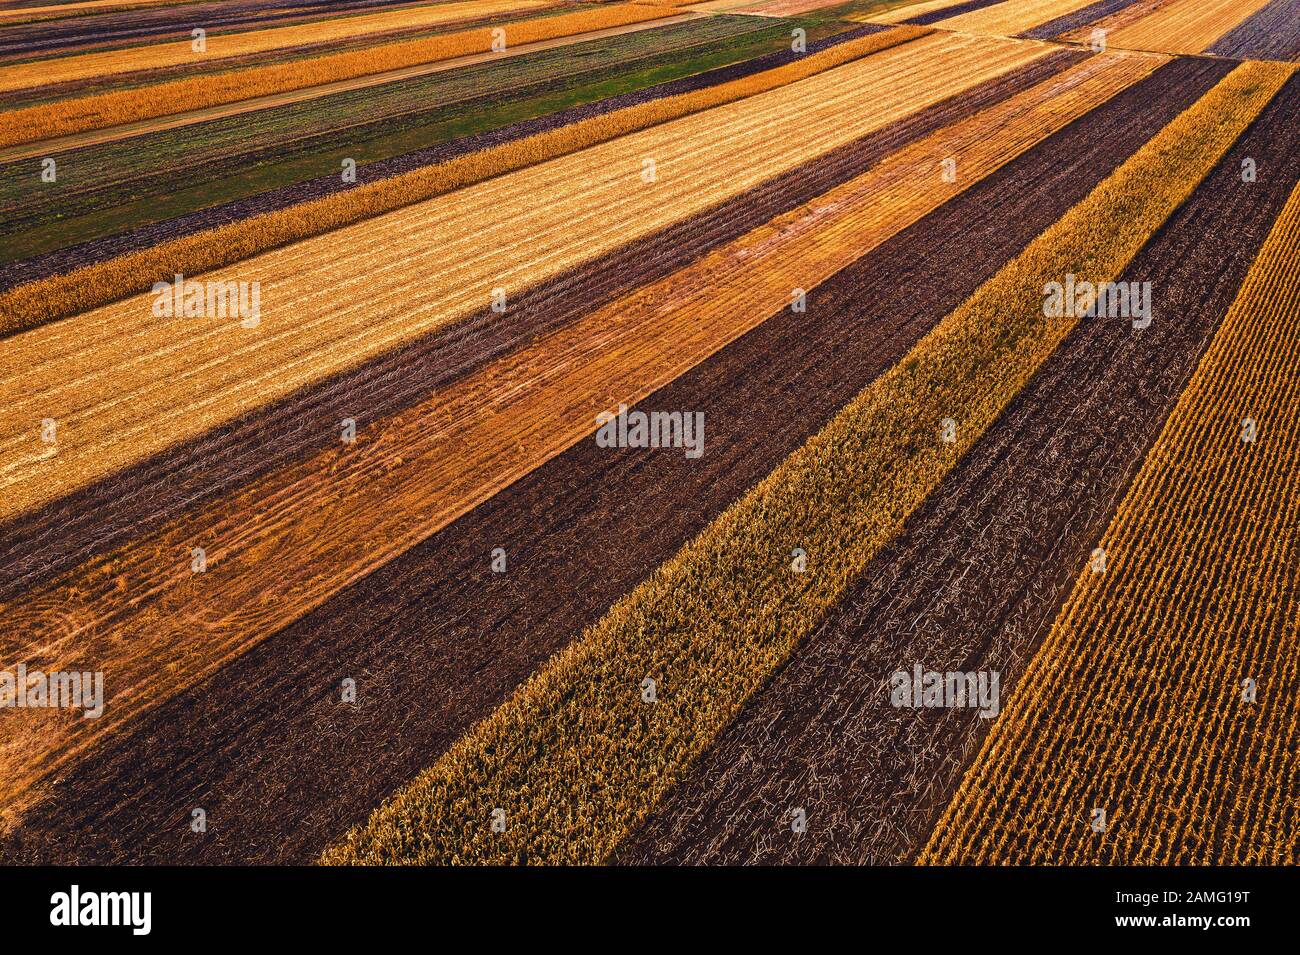 Campi agricoli dall'alto, fotografia con droni. Vista aerea della colorata patchwork di campagna che svanisce in prospettiva decrescente, Foto Stock